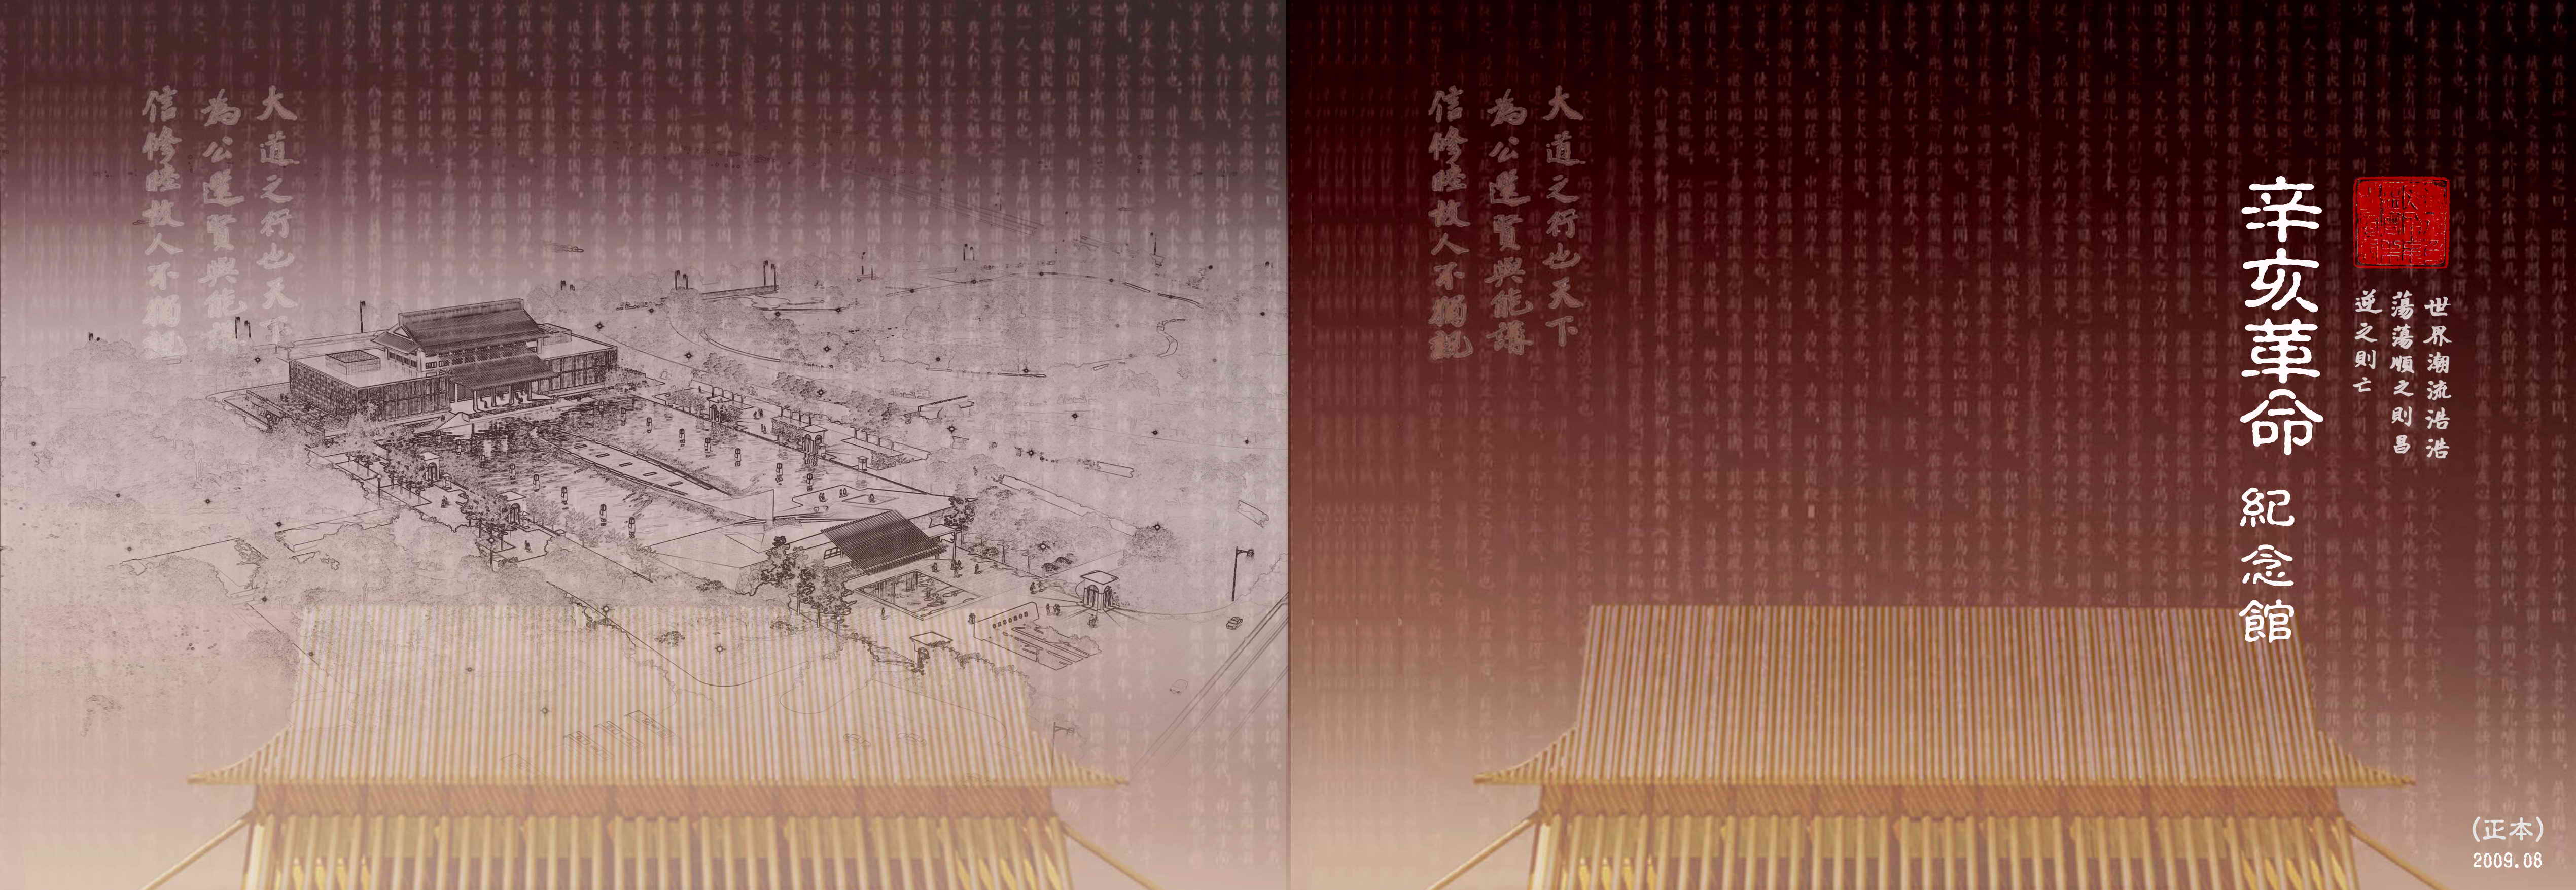 广州辛亥革命纪念馆建筑设计全套方案册